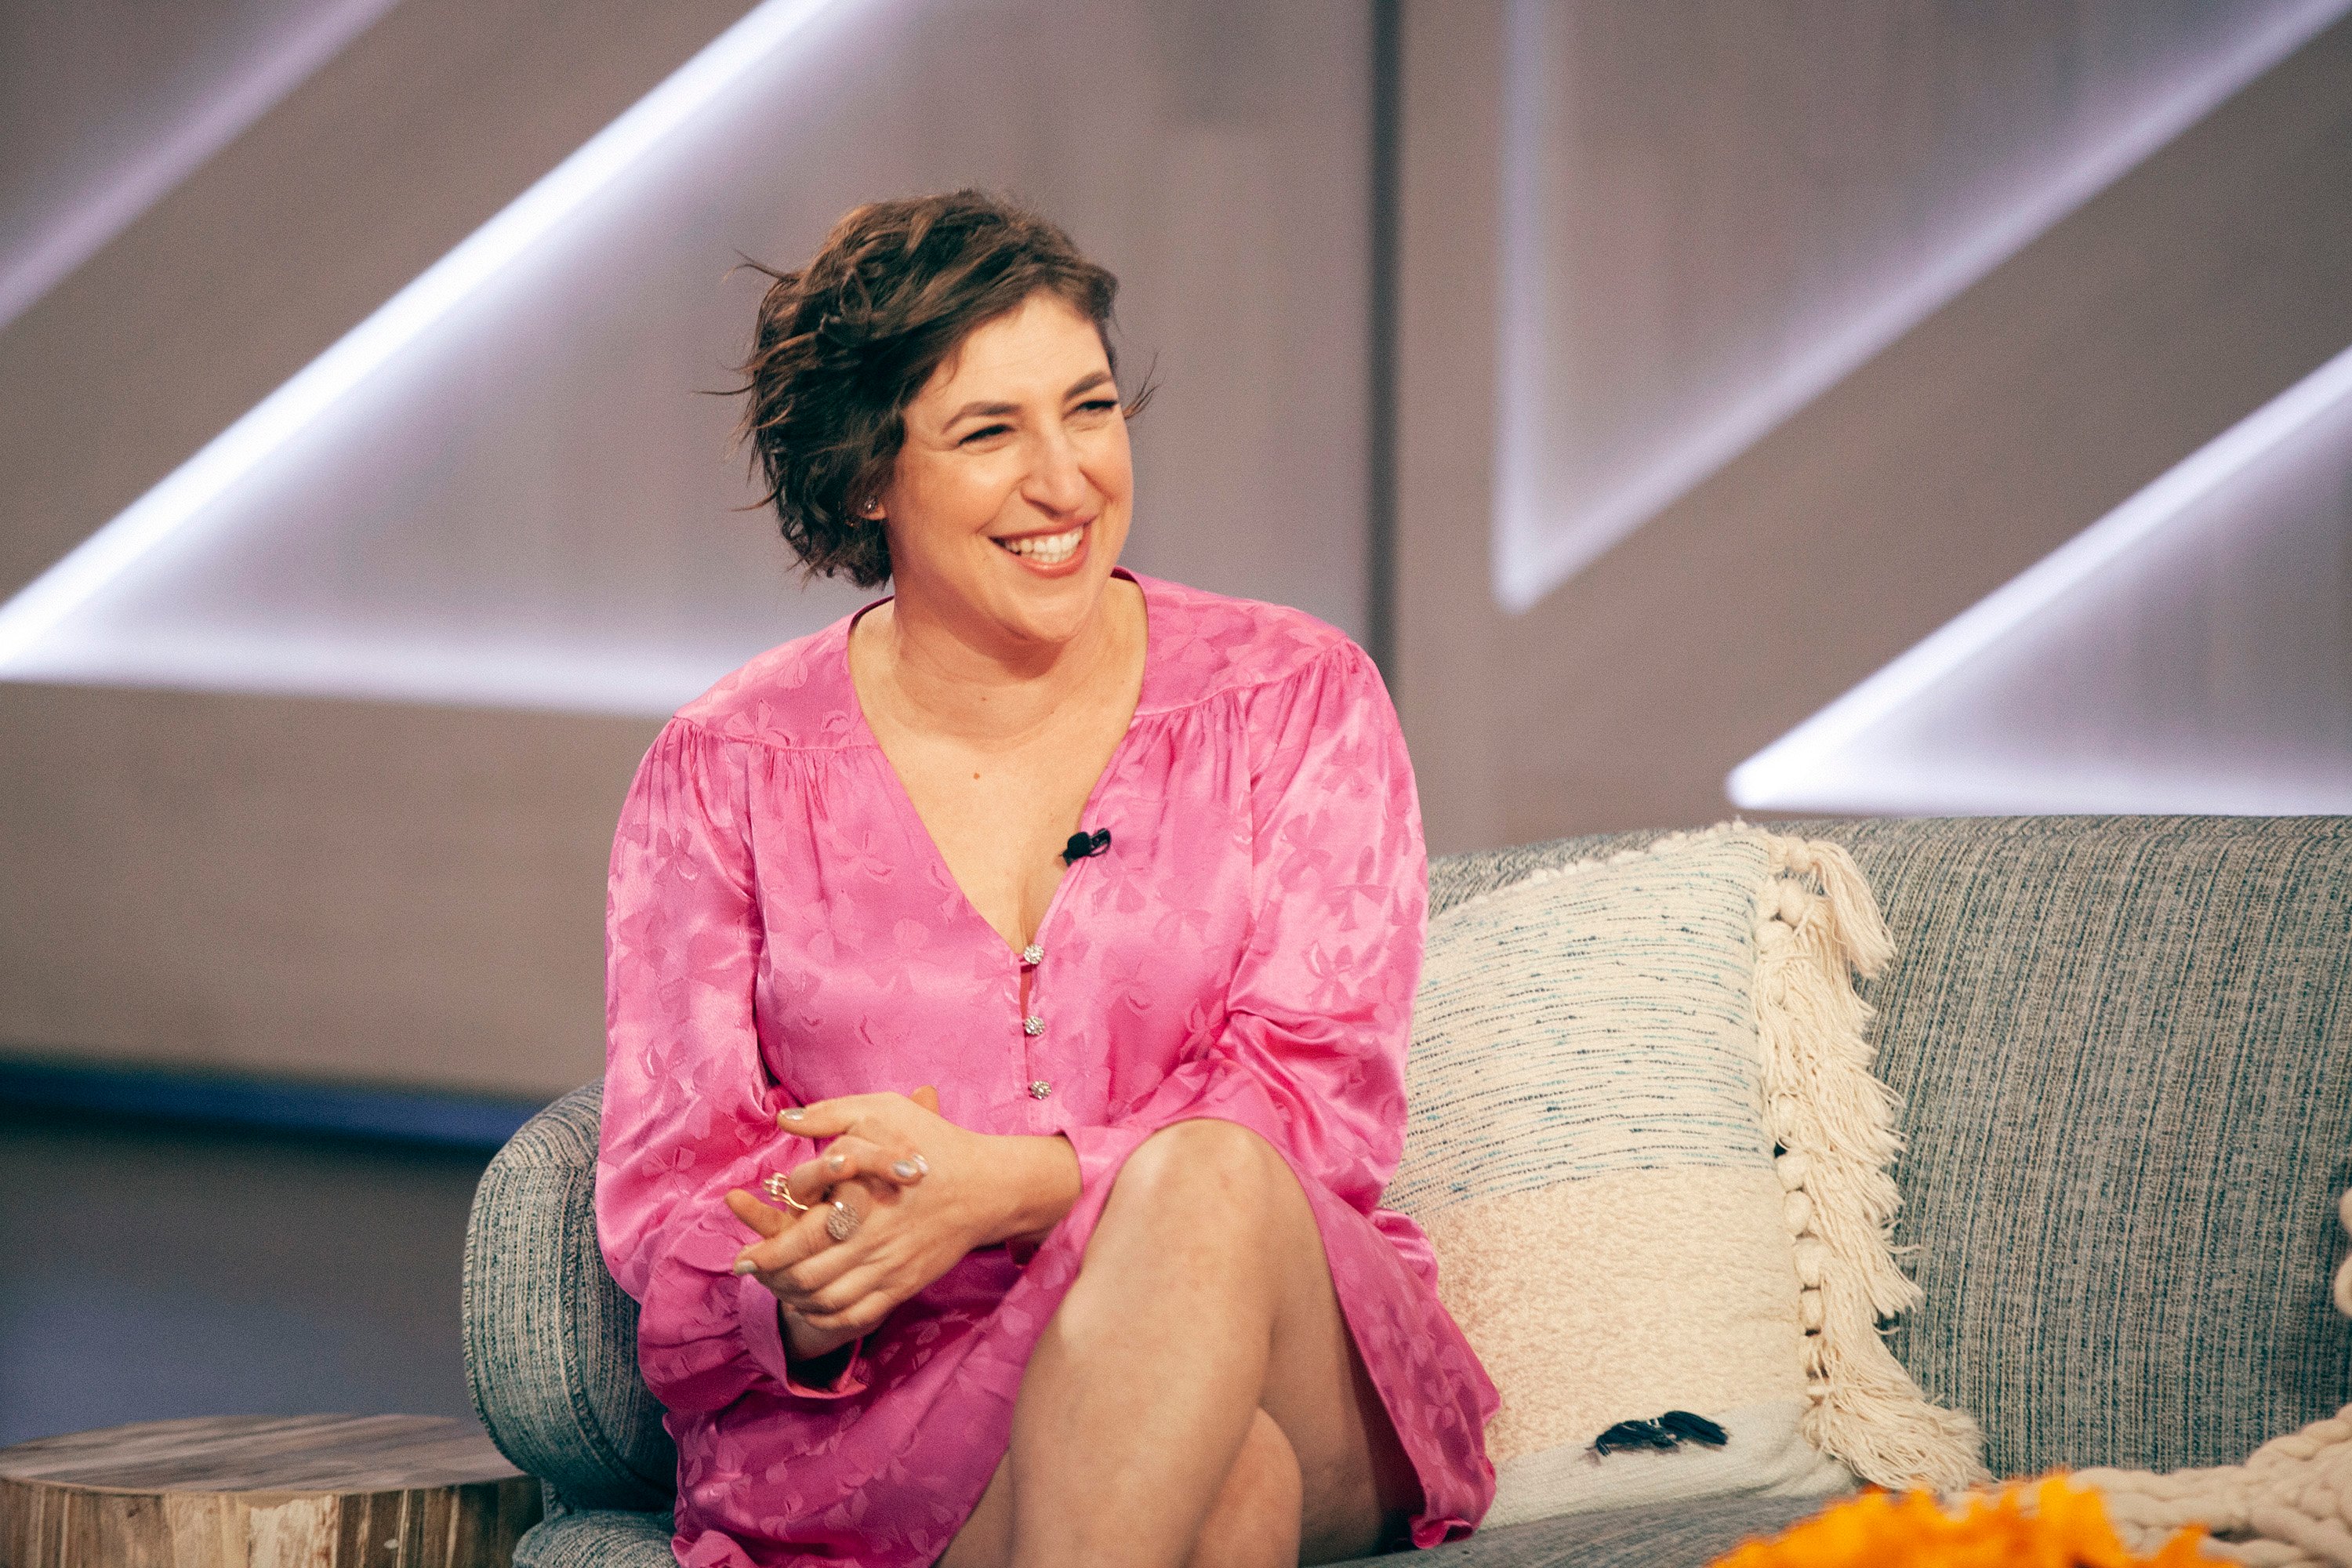 Mayim Bialik smiles on set in a pink dress